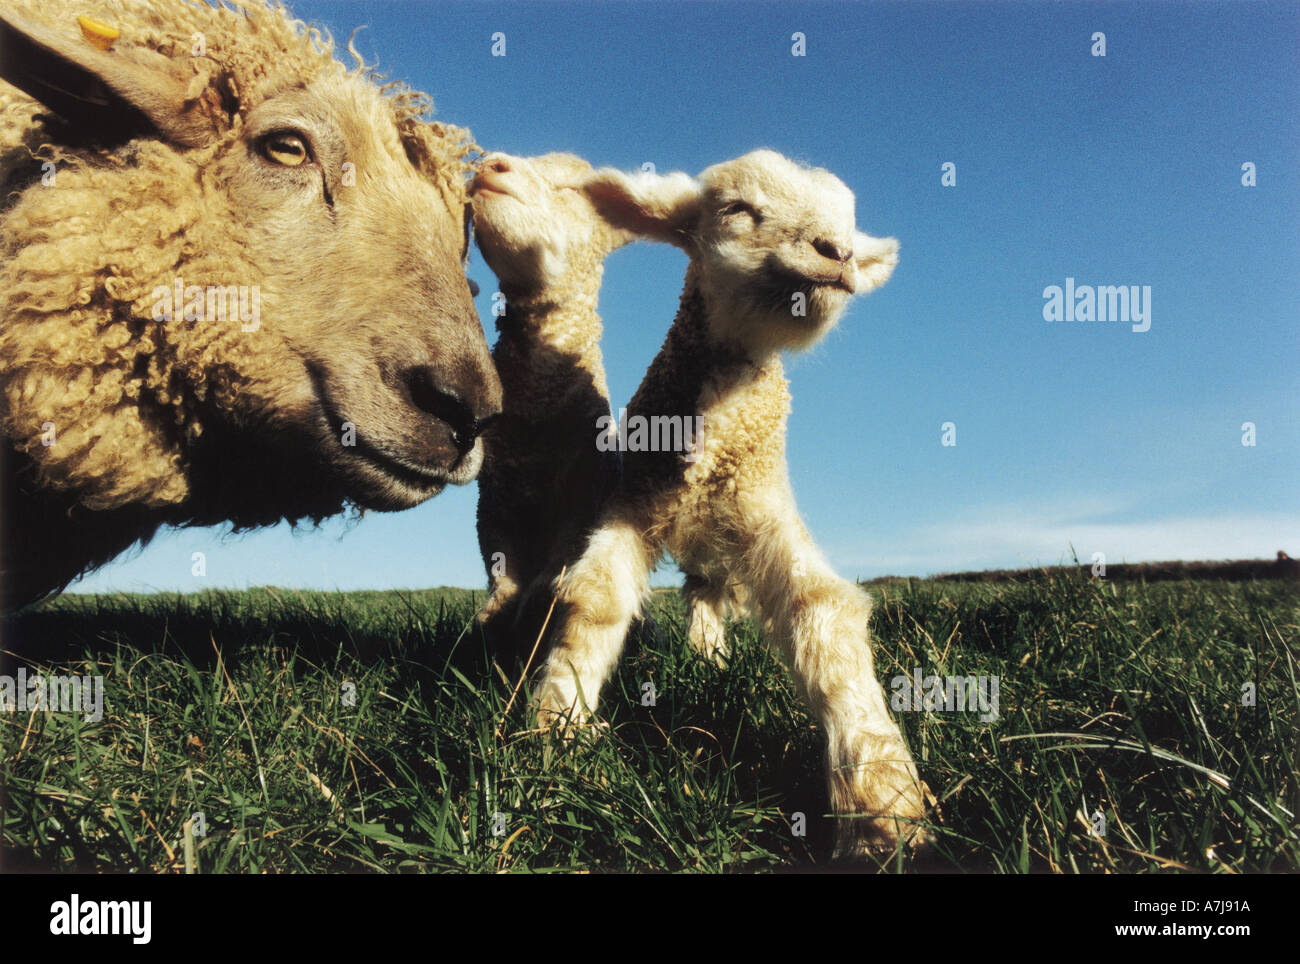 New Born Twin Cornish Lambs with Mother Ewe Stock Photo